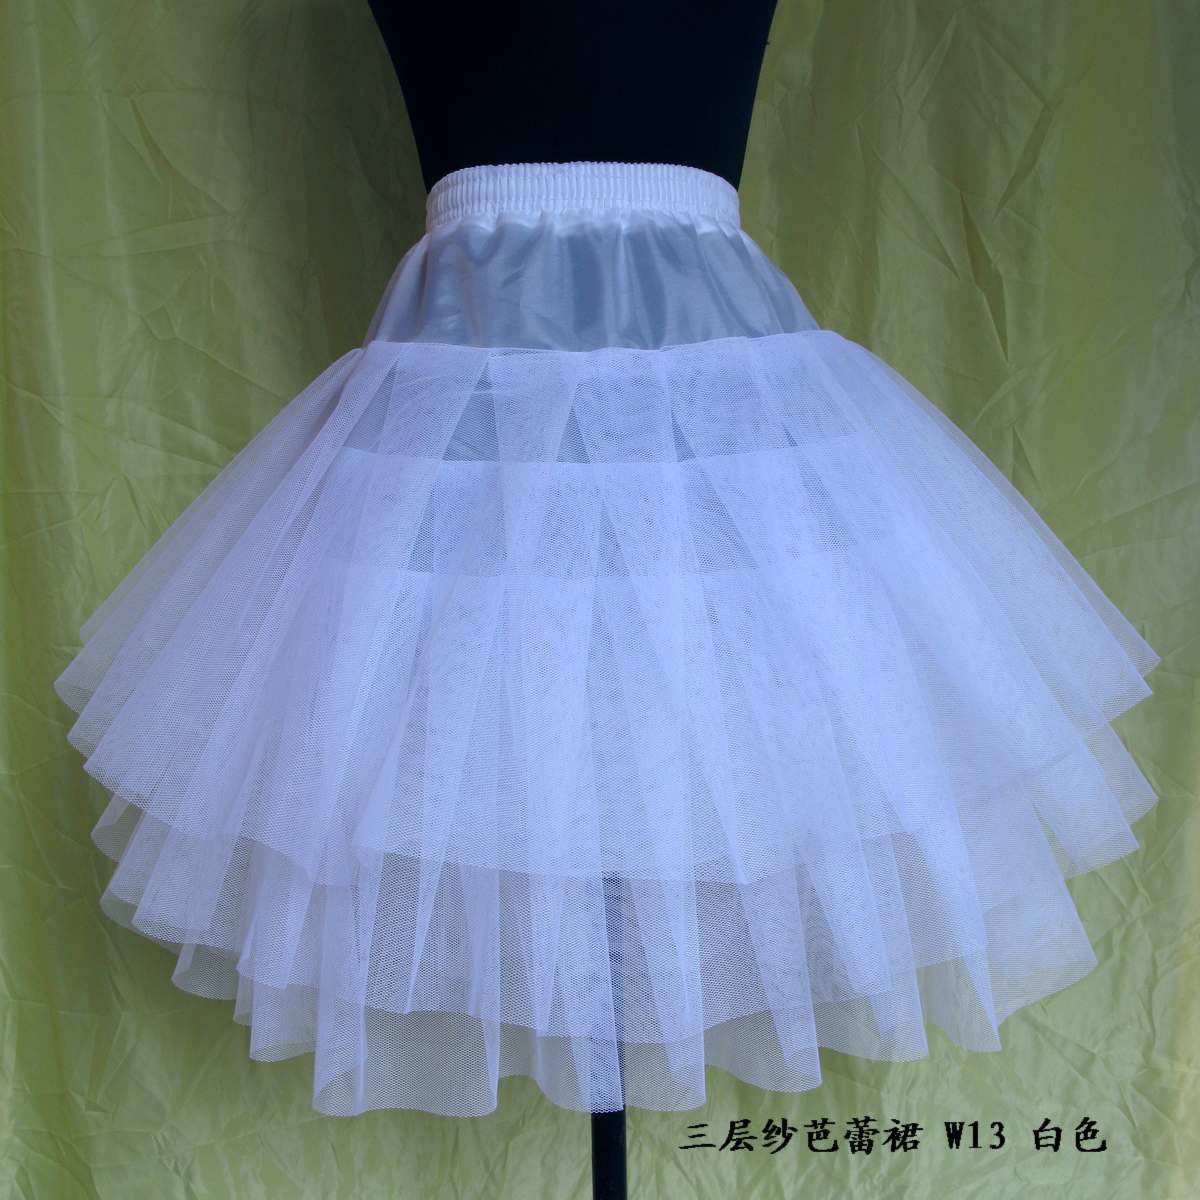 The bride dress formal dress skirt hard yarn net slip w13 white short skirt free shipping  Petticoats